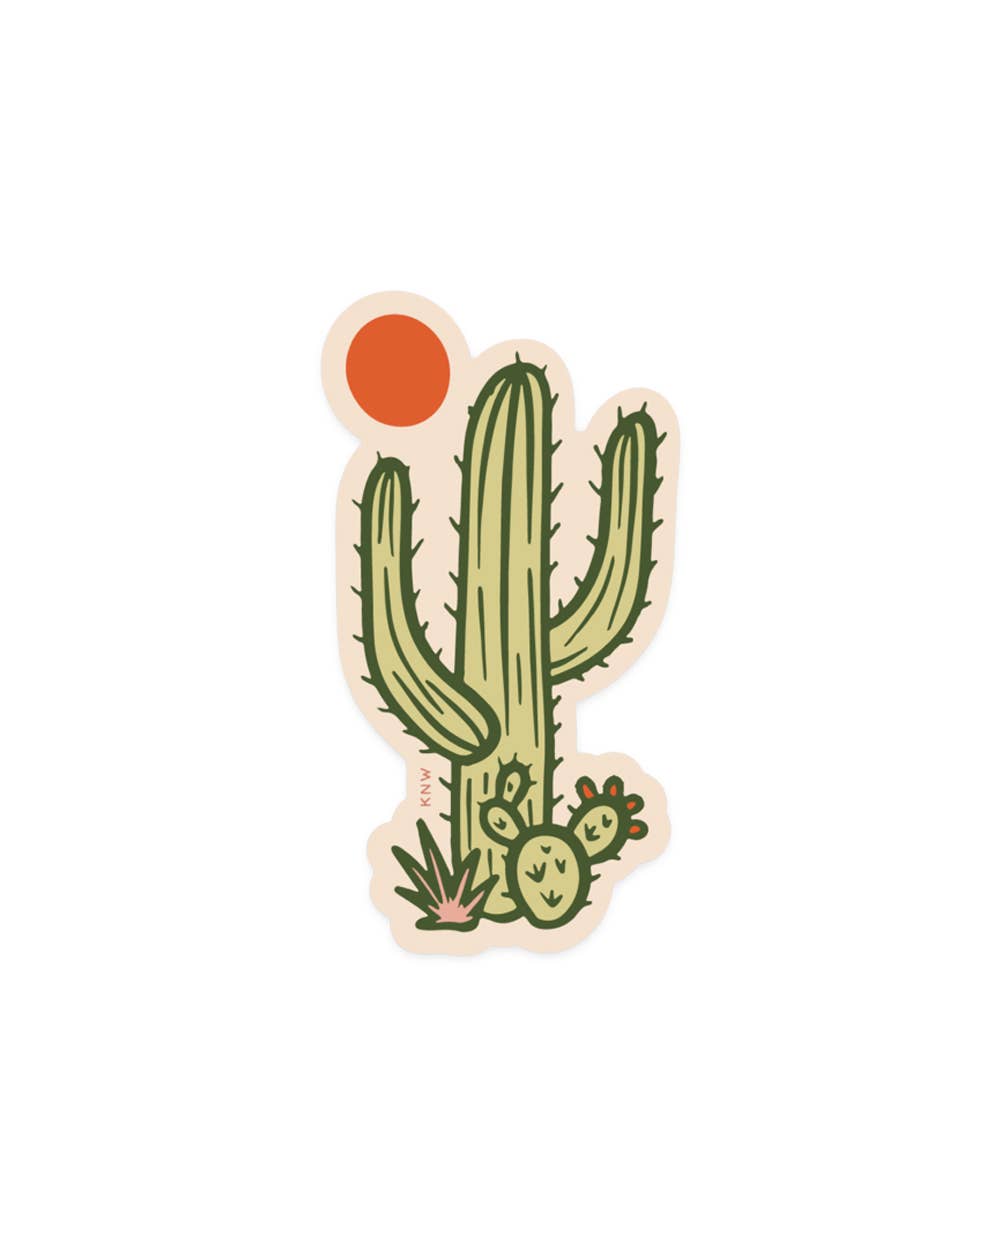 Sunny Saguaro Sticker